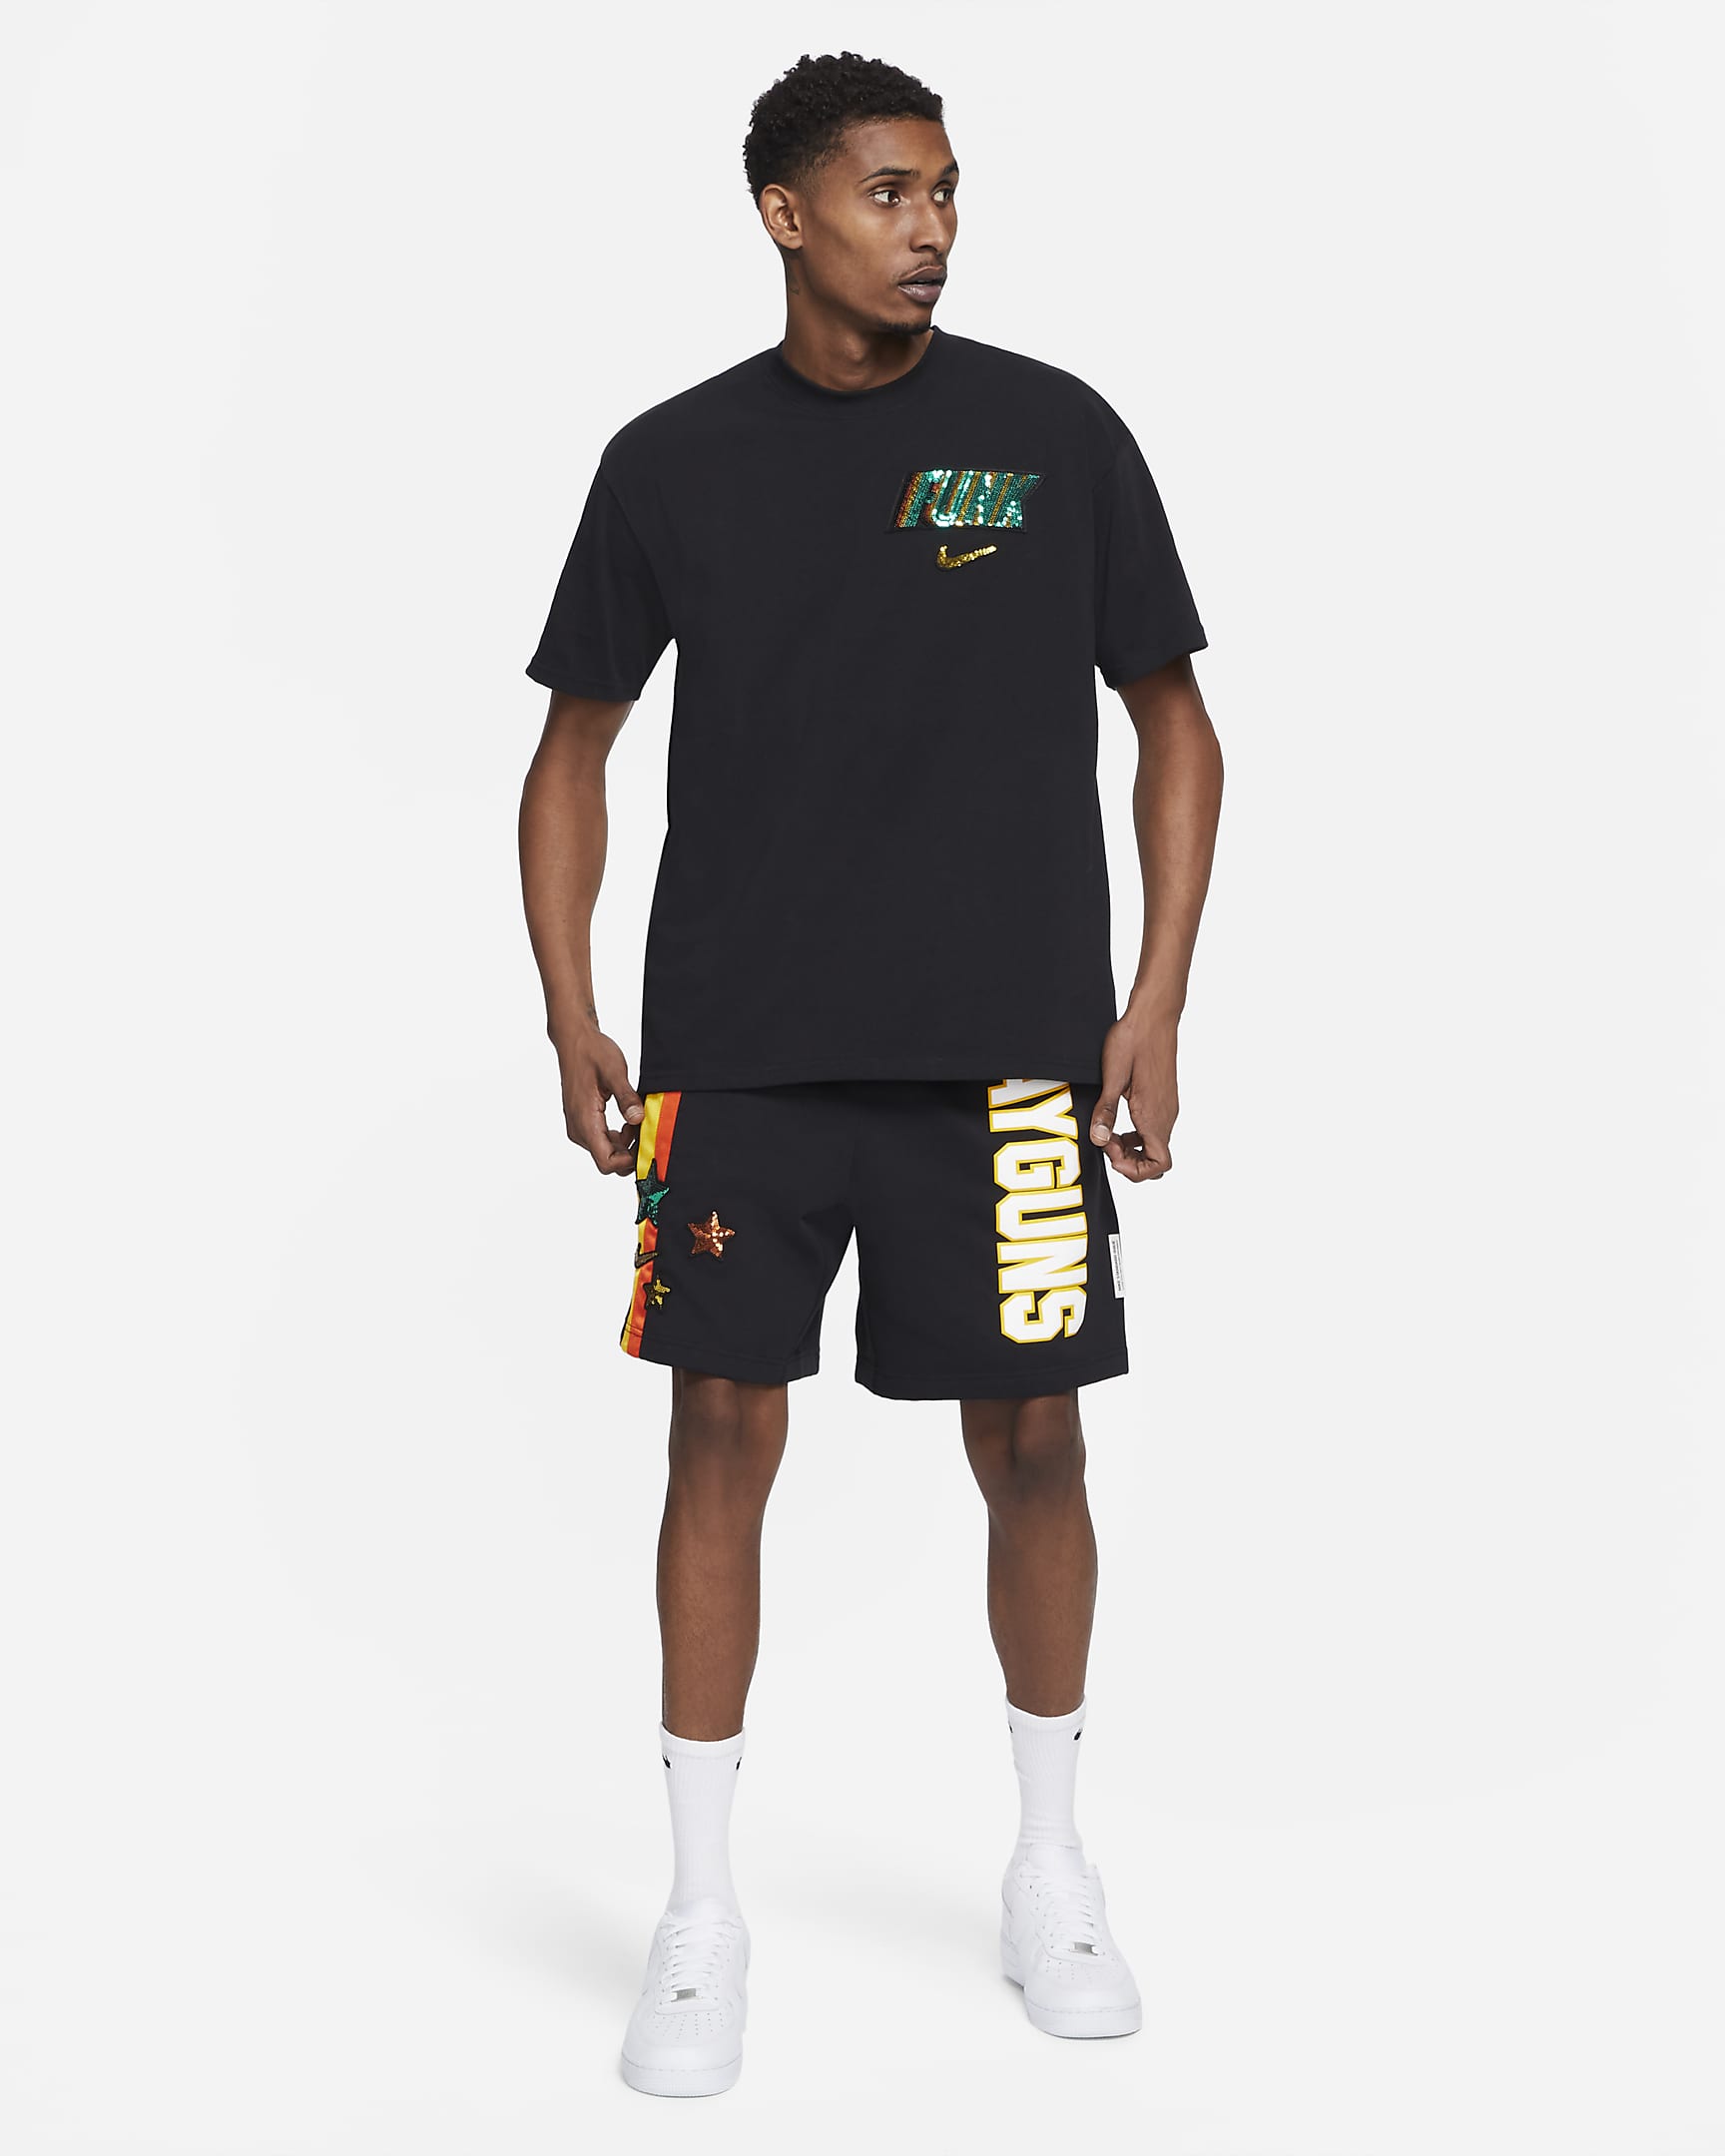 rayguns-mens-basketball-t-shirt-qZwq94-2